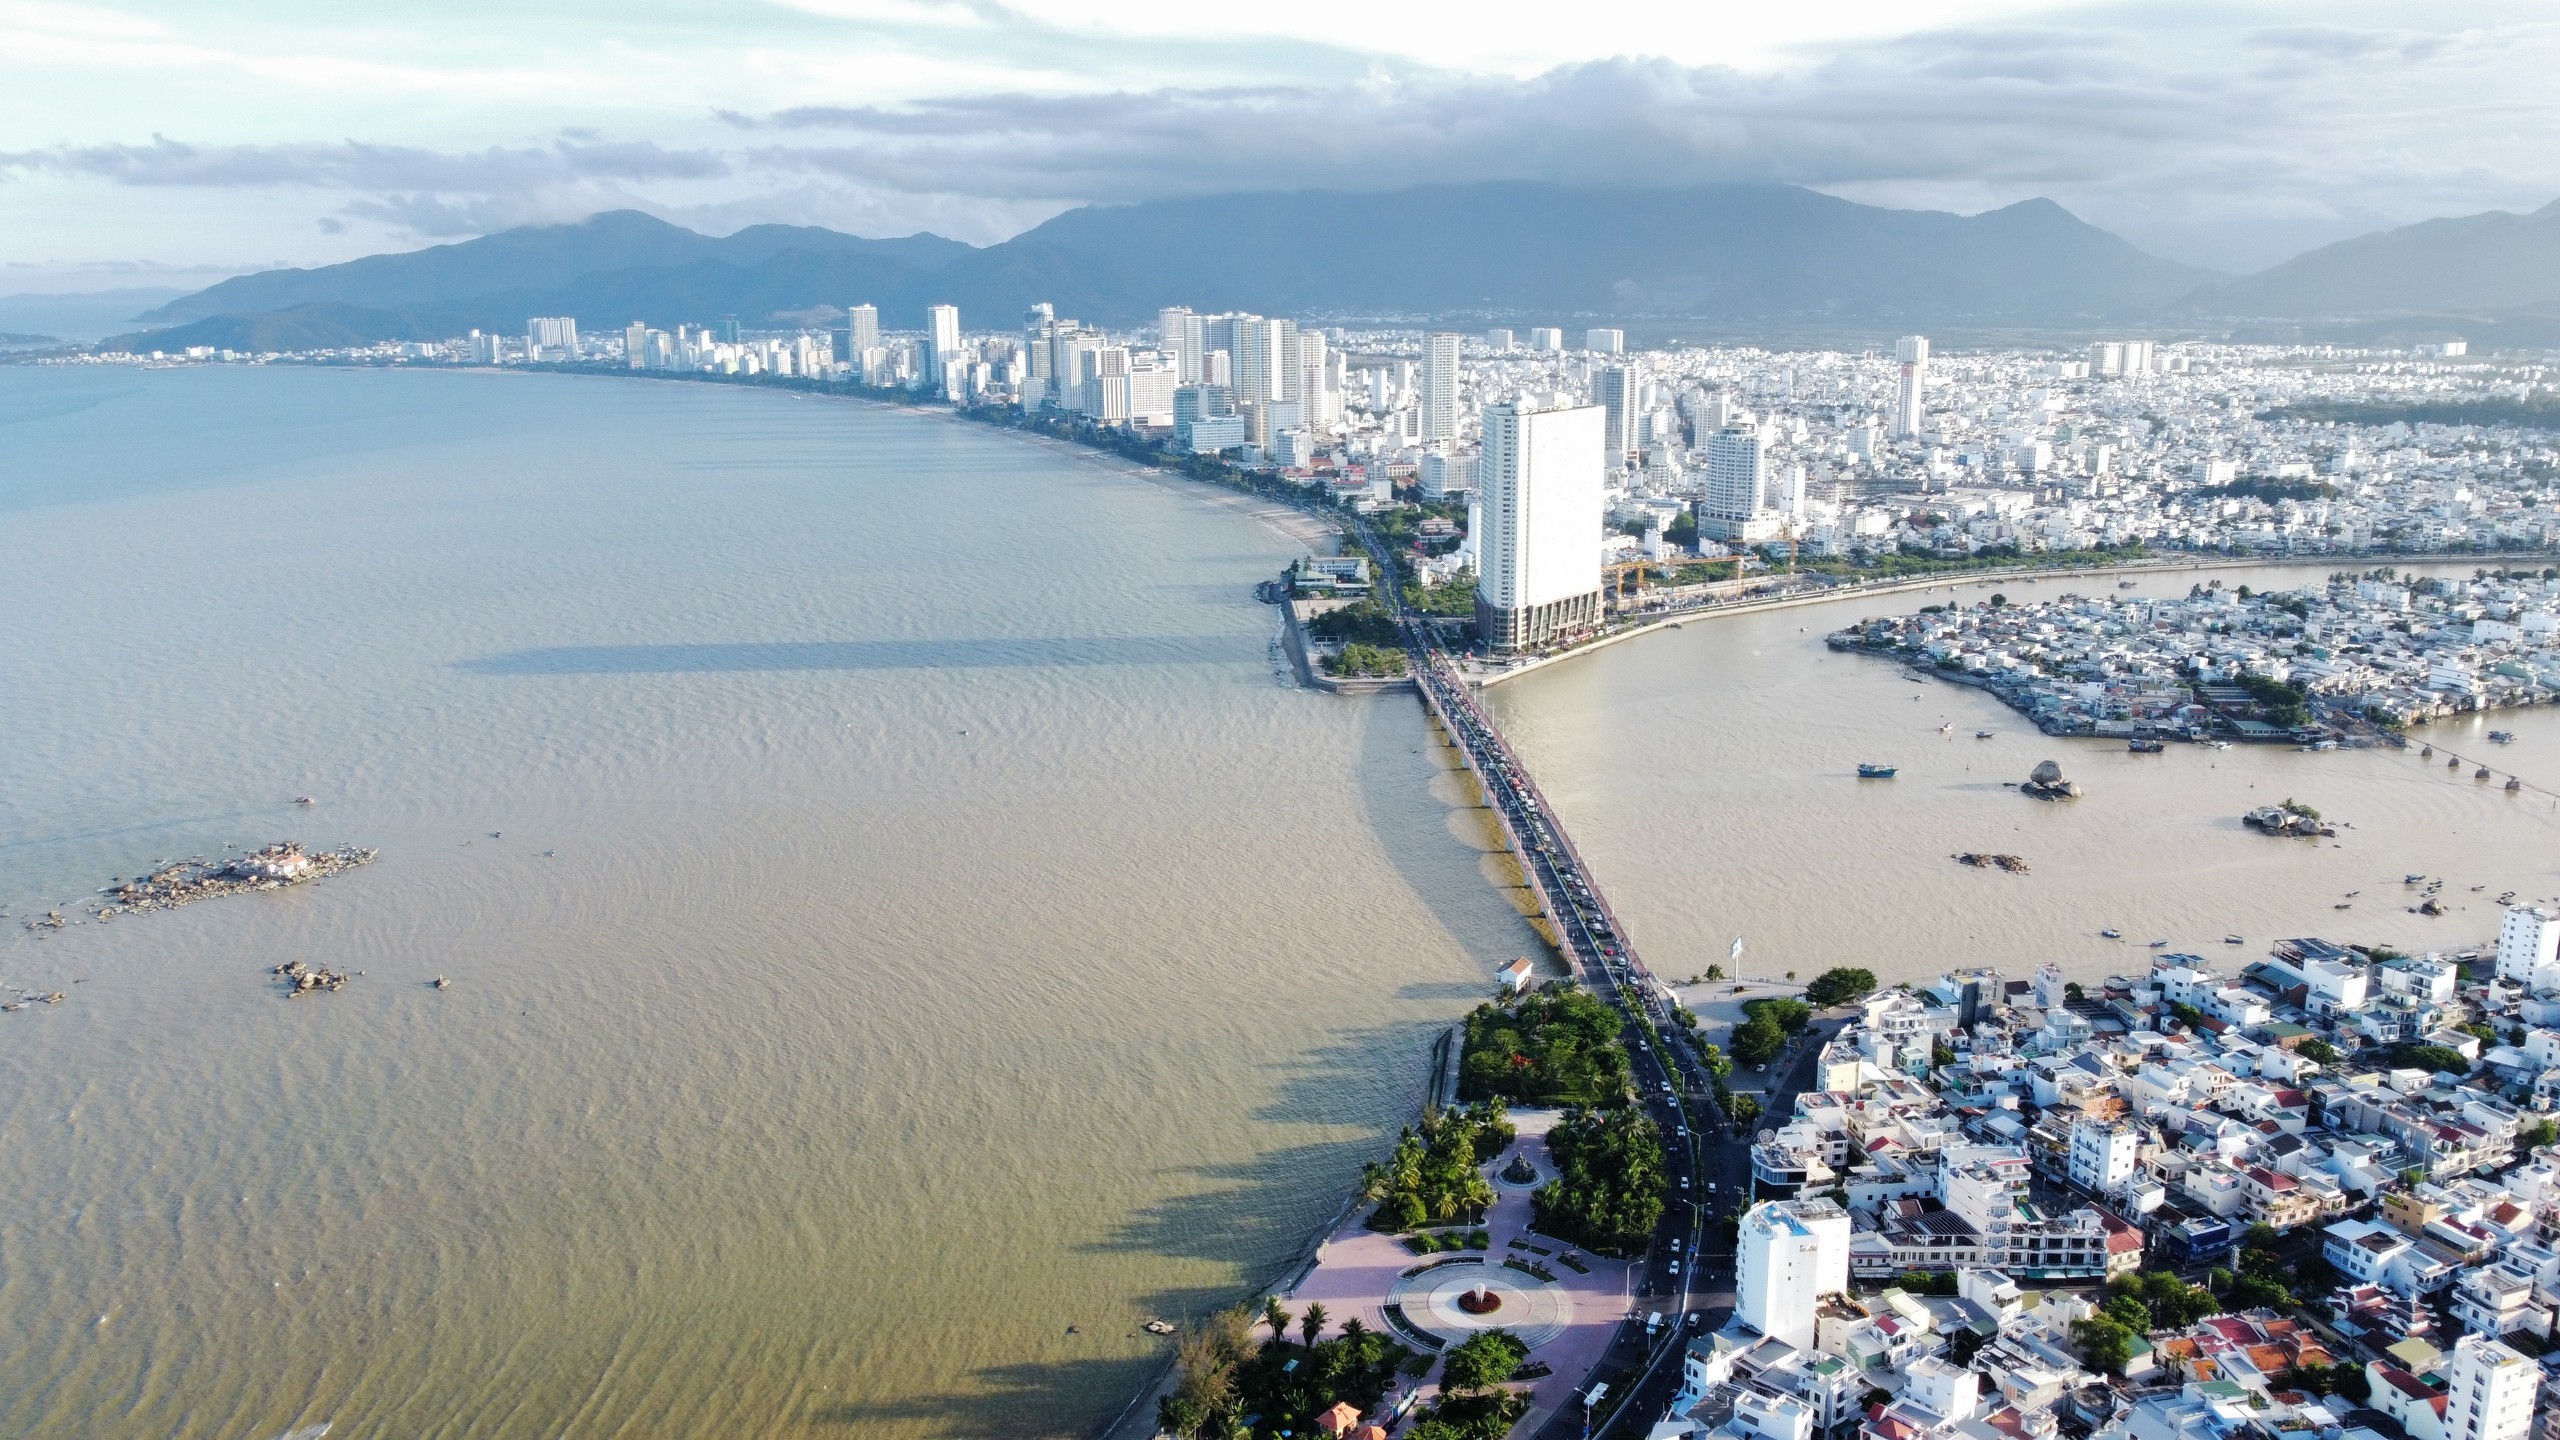 Thành phố Nha Trang đặt mục tiêu chuyển đổi mô hình tăng trưởng theo hướng xanh hóa các ngành kinh tế. Ảnh: MINH TOÀN